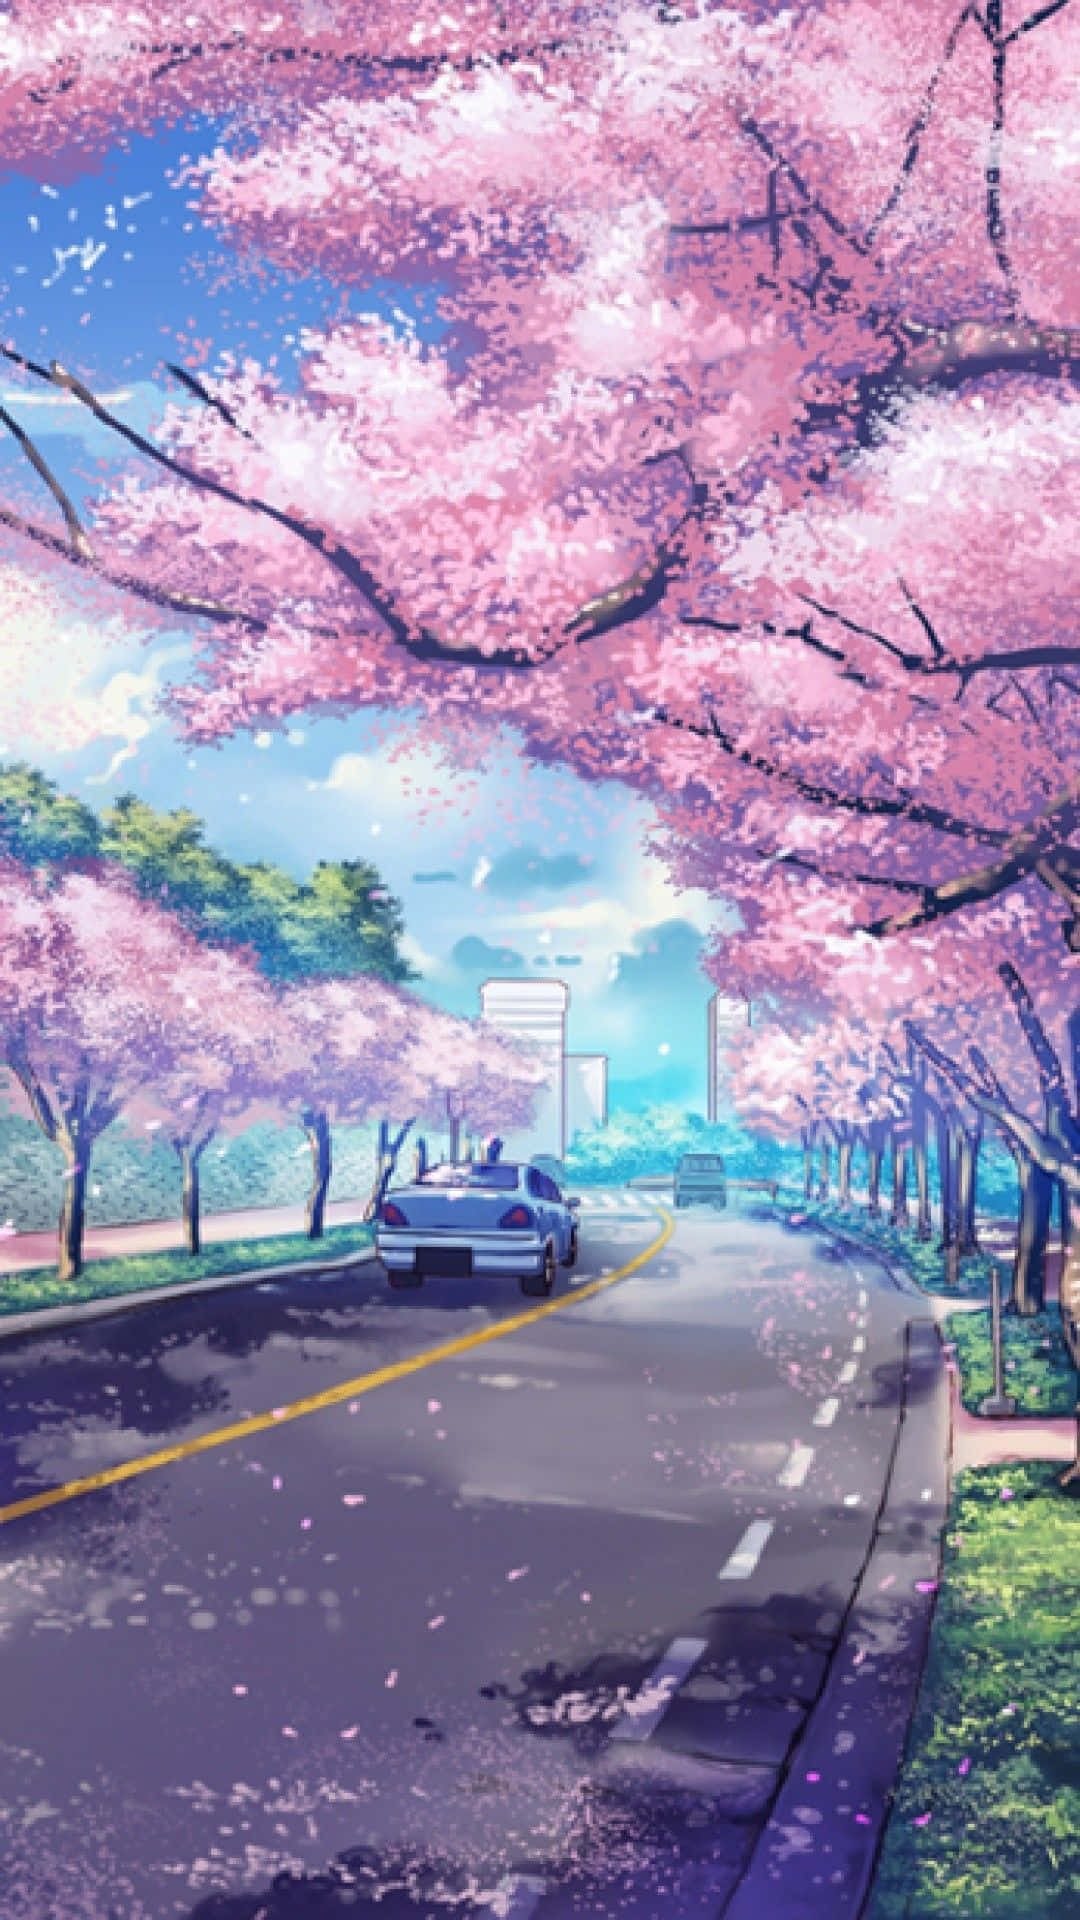 Carreteradurante La Temporada De Primavera Con Árboles De Sakura Animados. Fondo de pantalla